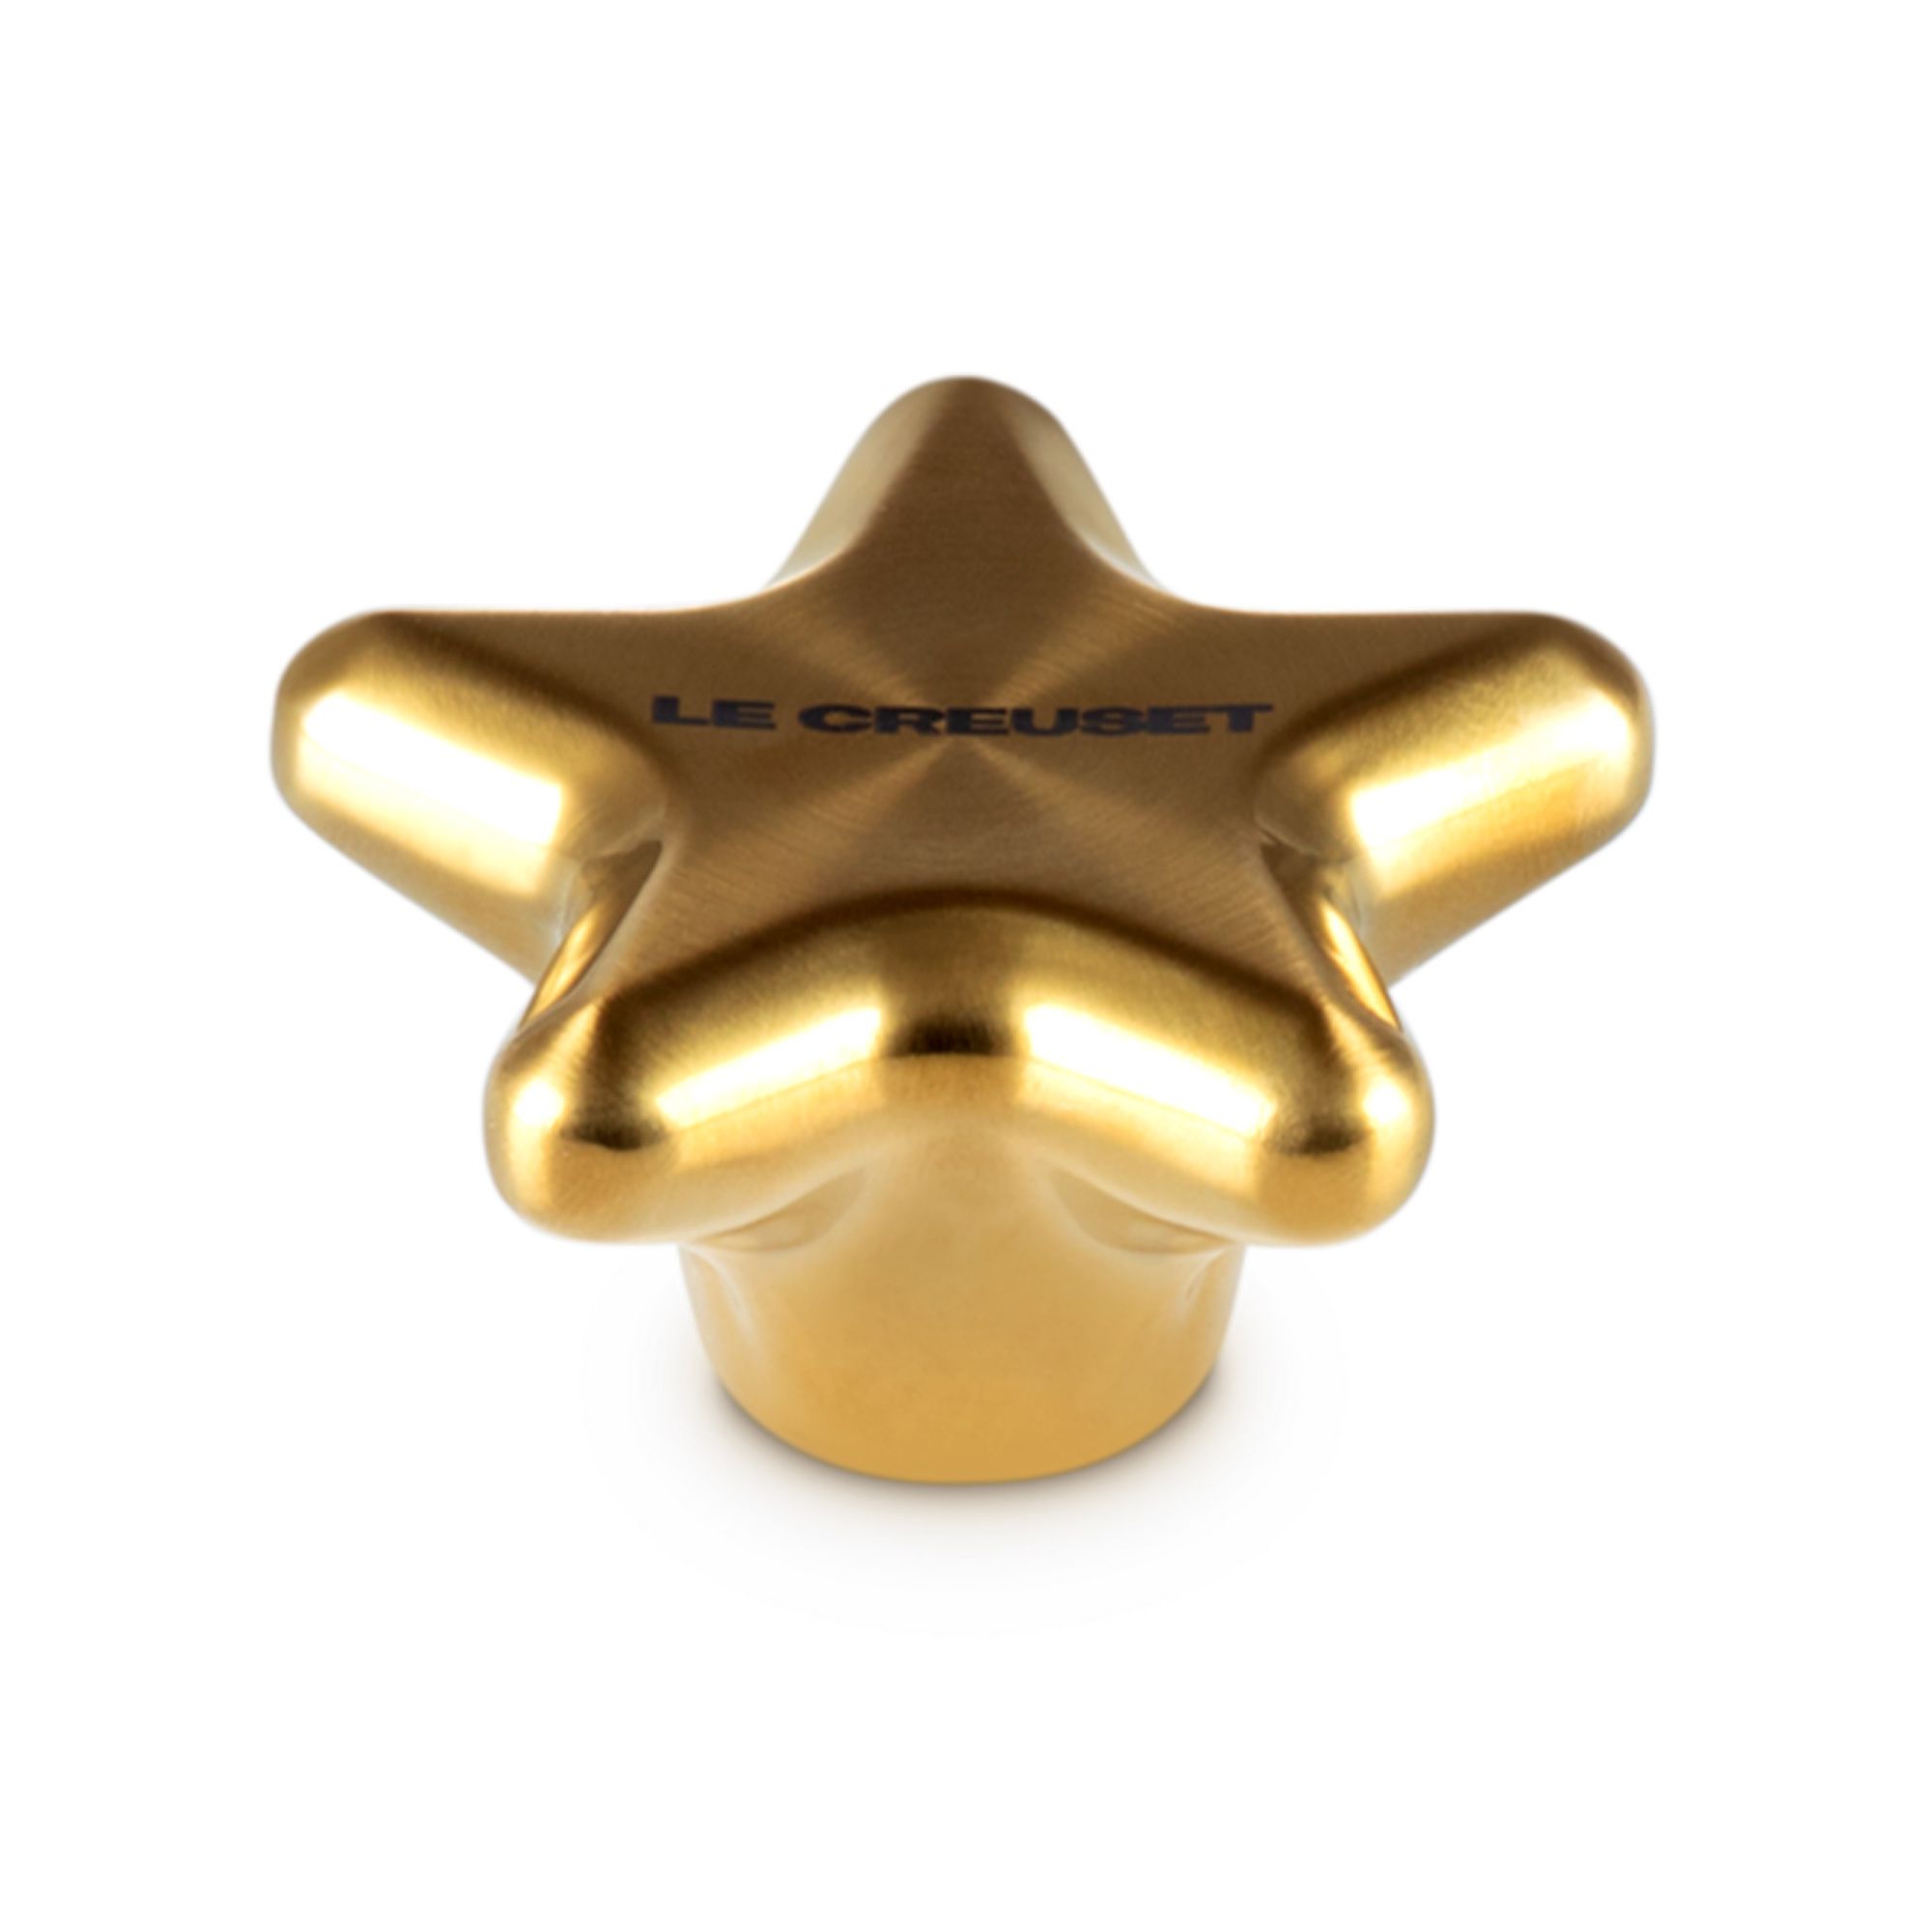 Le Creuset - Gold Star Knob 5,7 cm